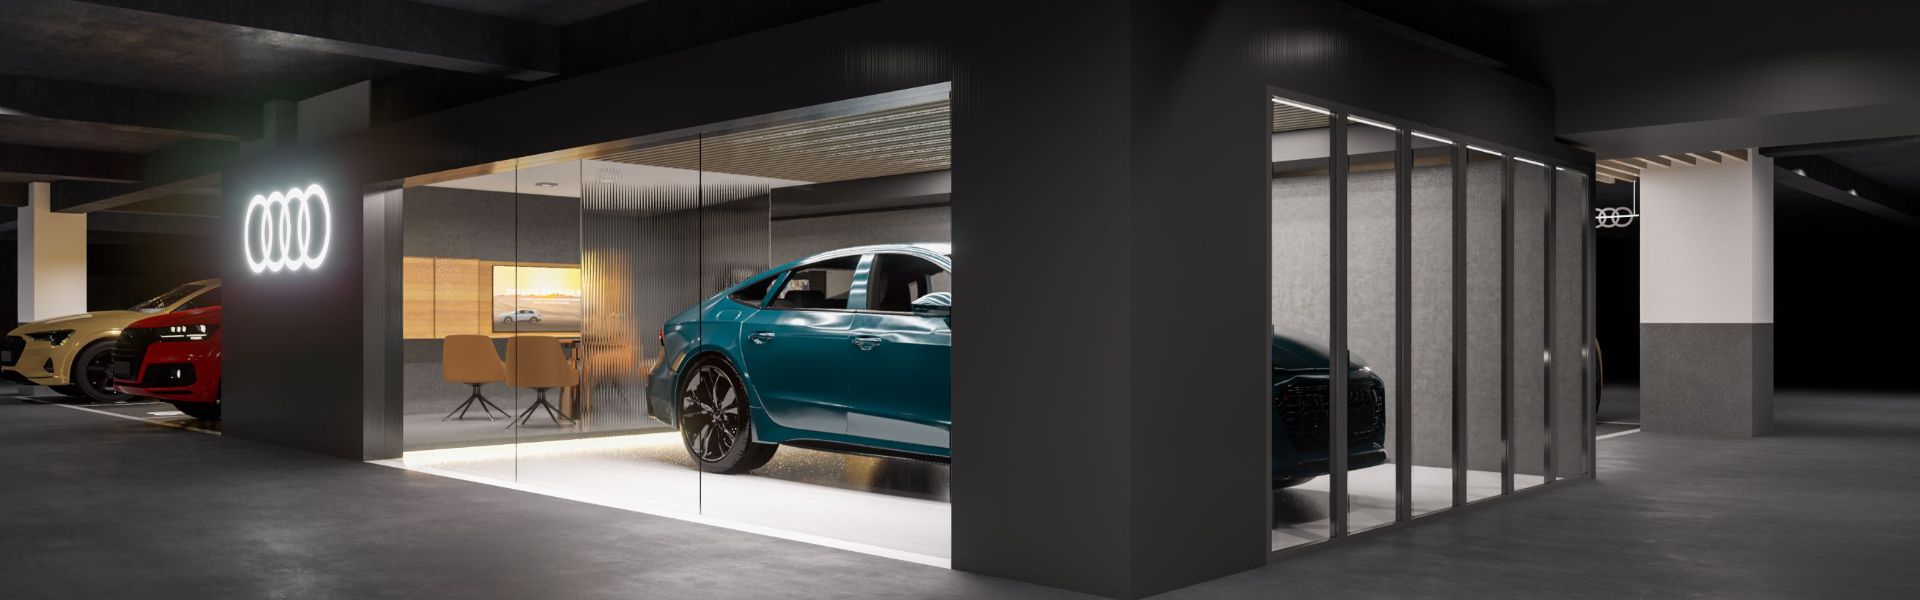 The Audi A7L in a showroom 